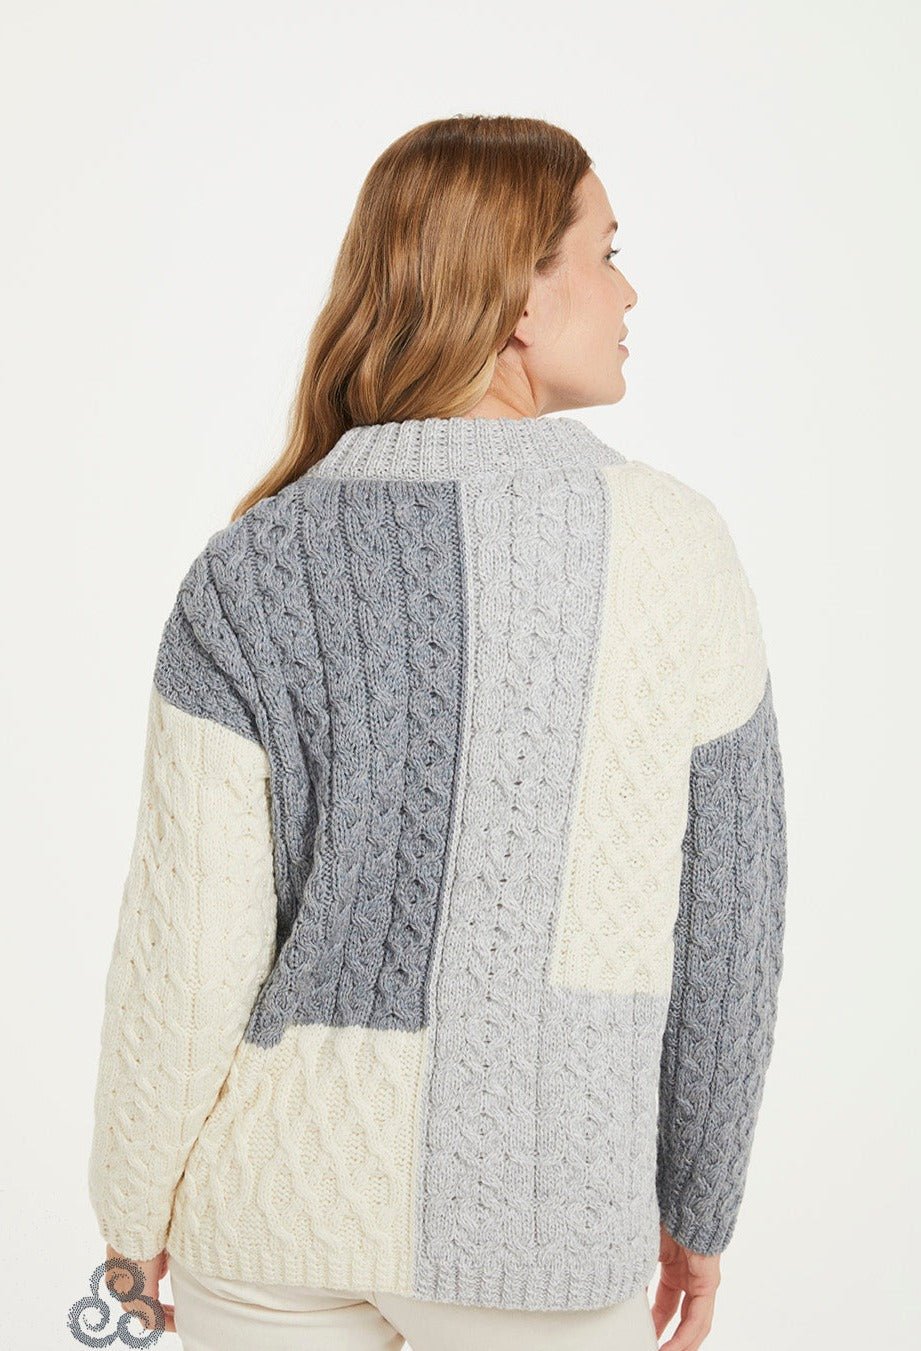 Aran - Super Soft Patch Work Sweater - Grey